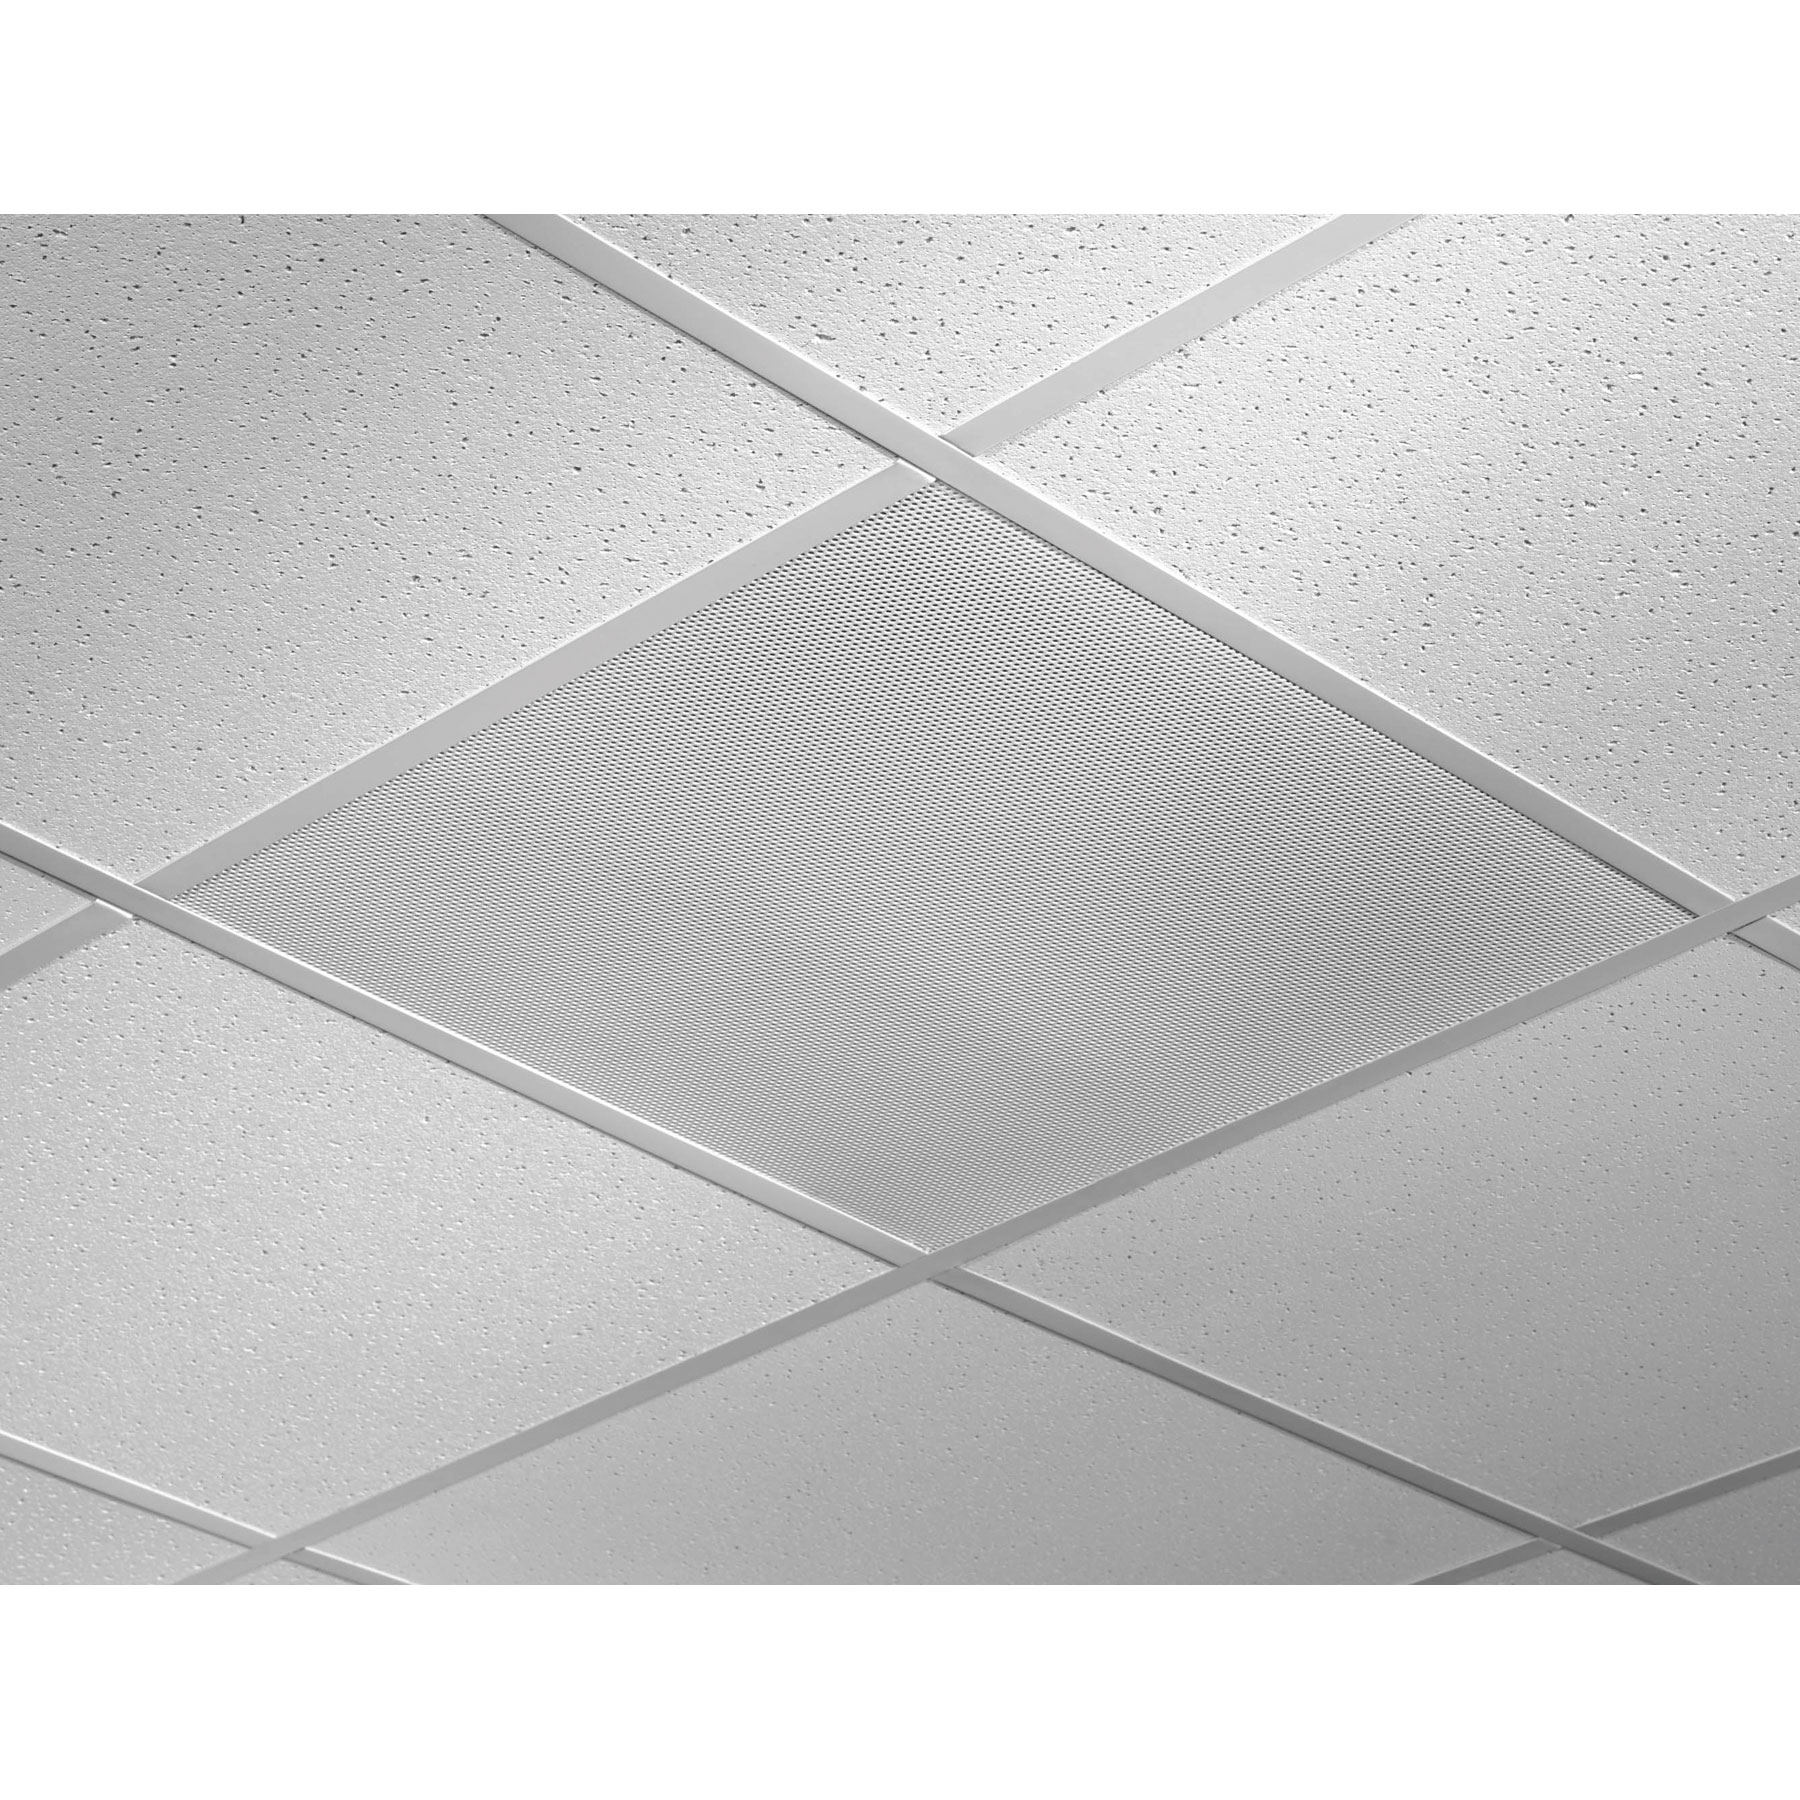 Ceiling Tile Speakers 2×2quam system 12 24 x 24 lay in ceiling tile speaker 5w 2570v